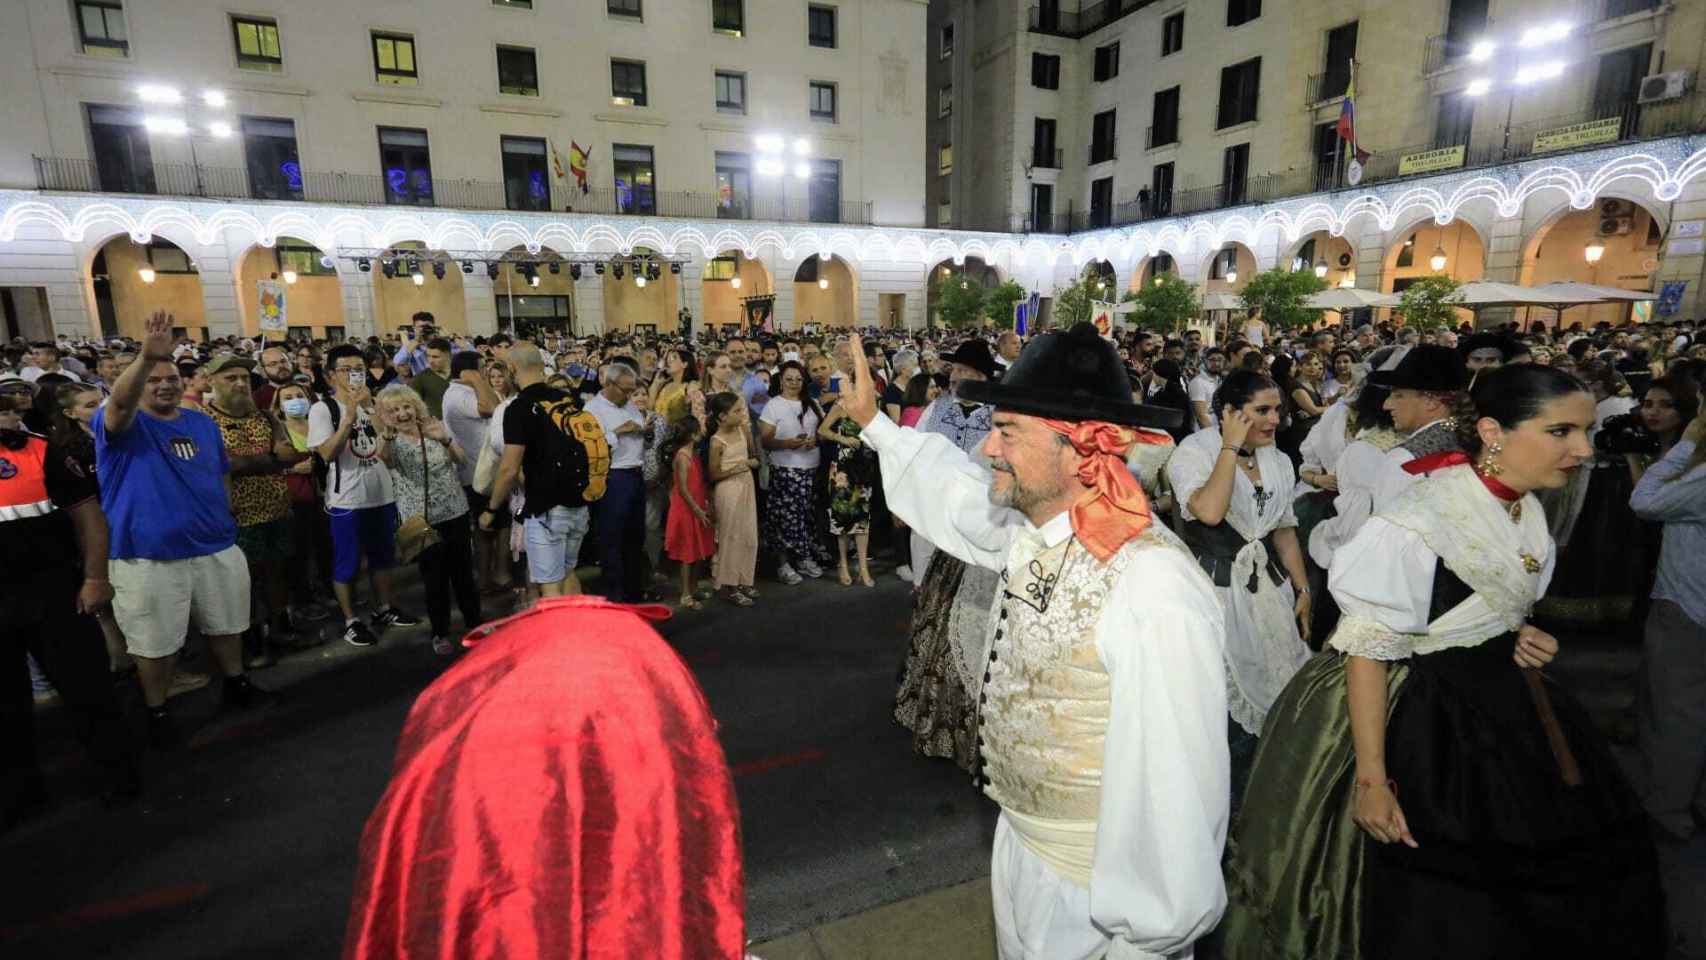 El alcalde, Luis Barcala, saluda al público en la plaza.